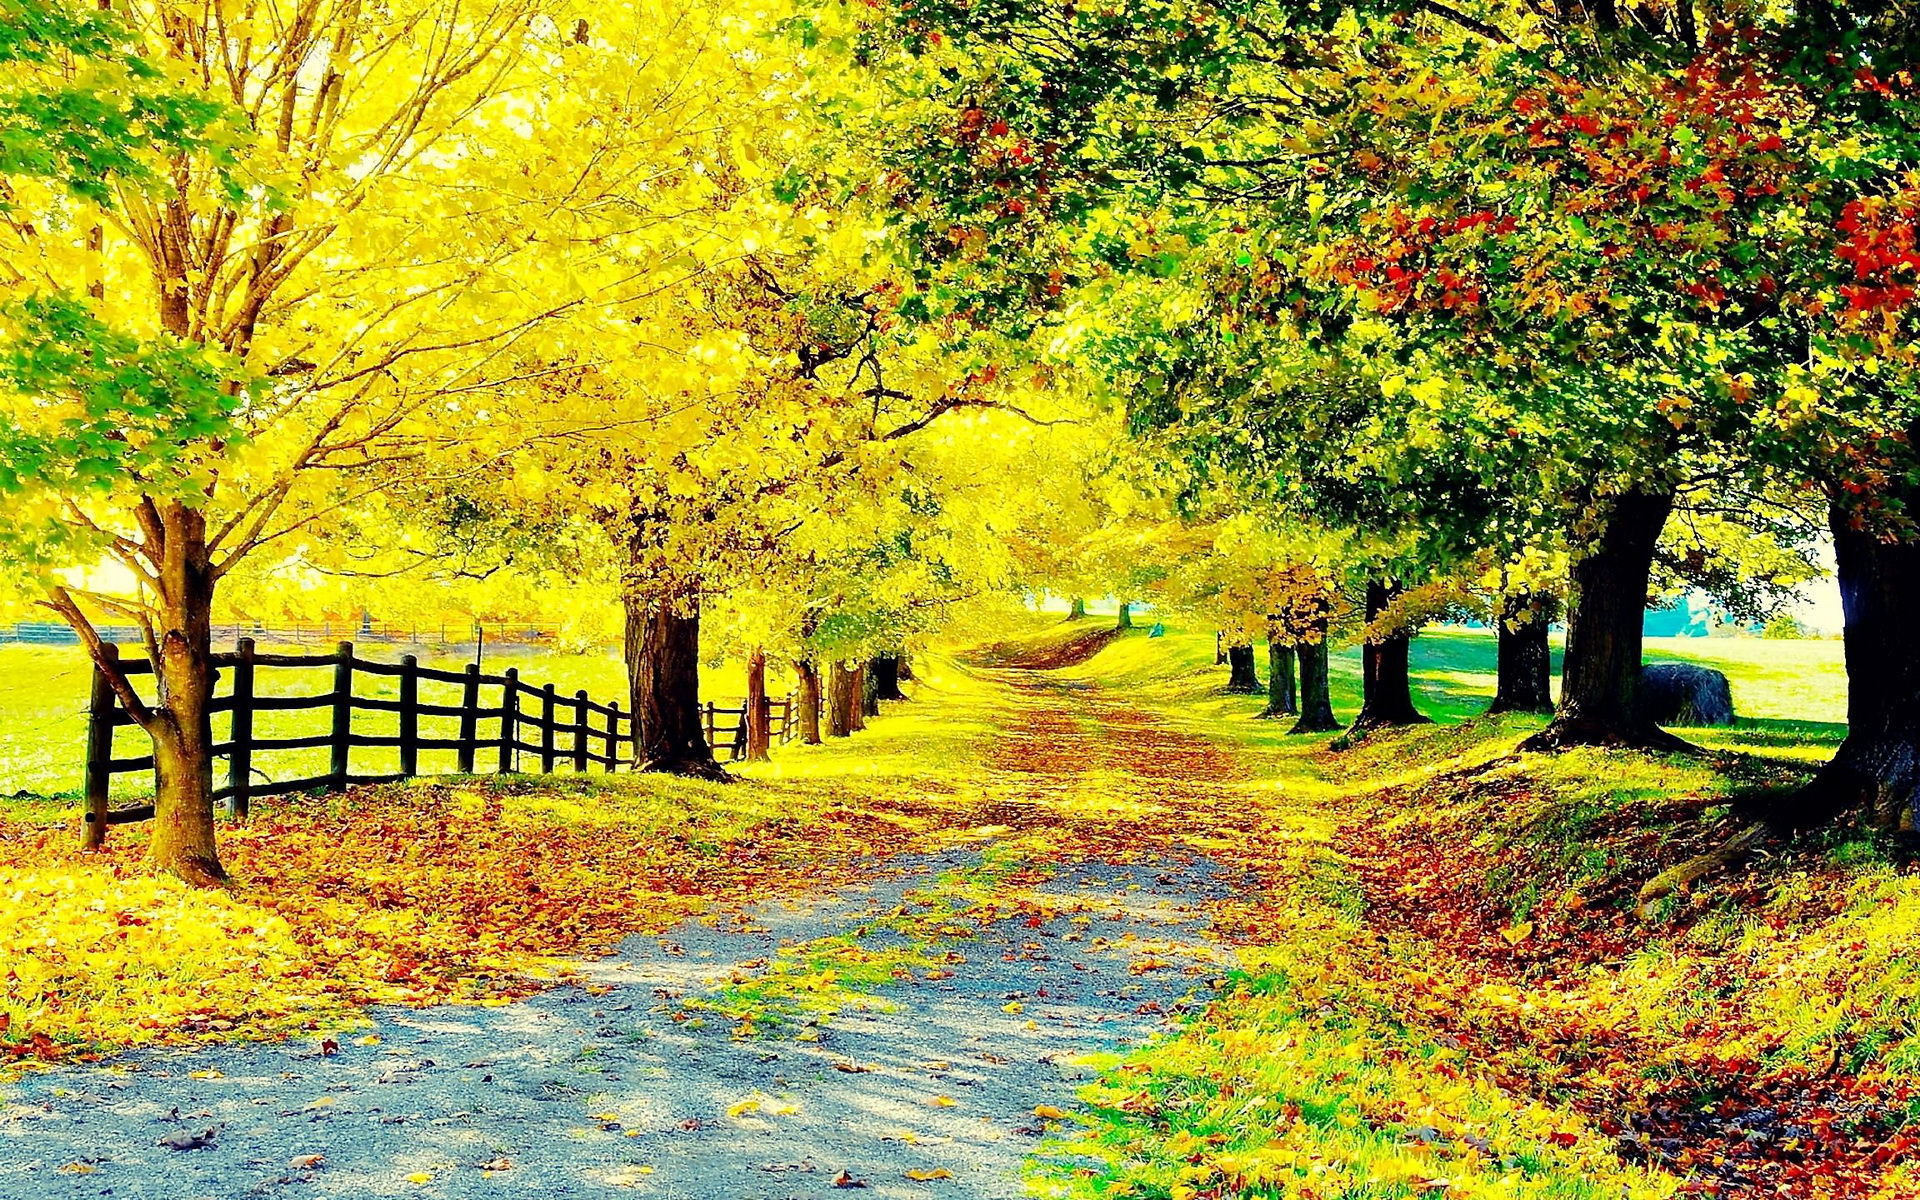 Autumn scene background: Nét đẹp của mùa thu đã được tô điểm lên hình nền này. Những lá rụng vàng rực cùng cảnh quan đầy màu sắc sẽ đưa bạn vào không gian ấm áp và thích thú.